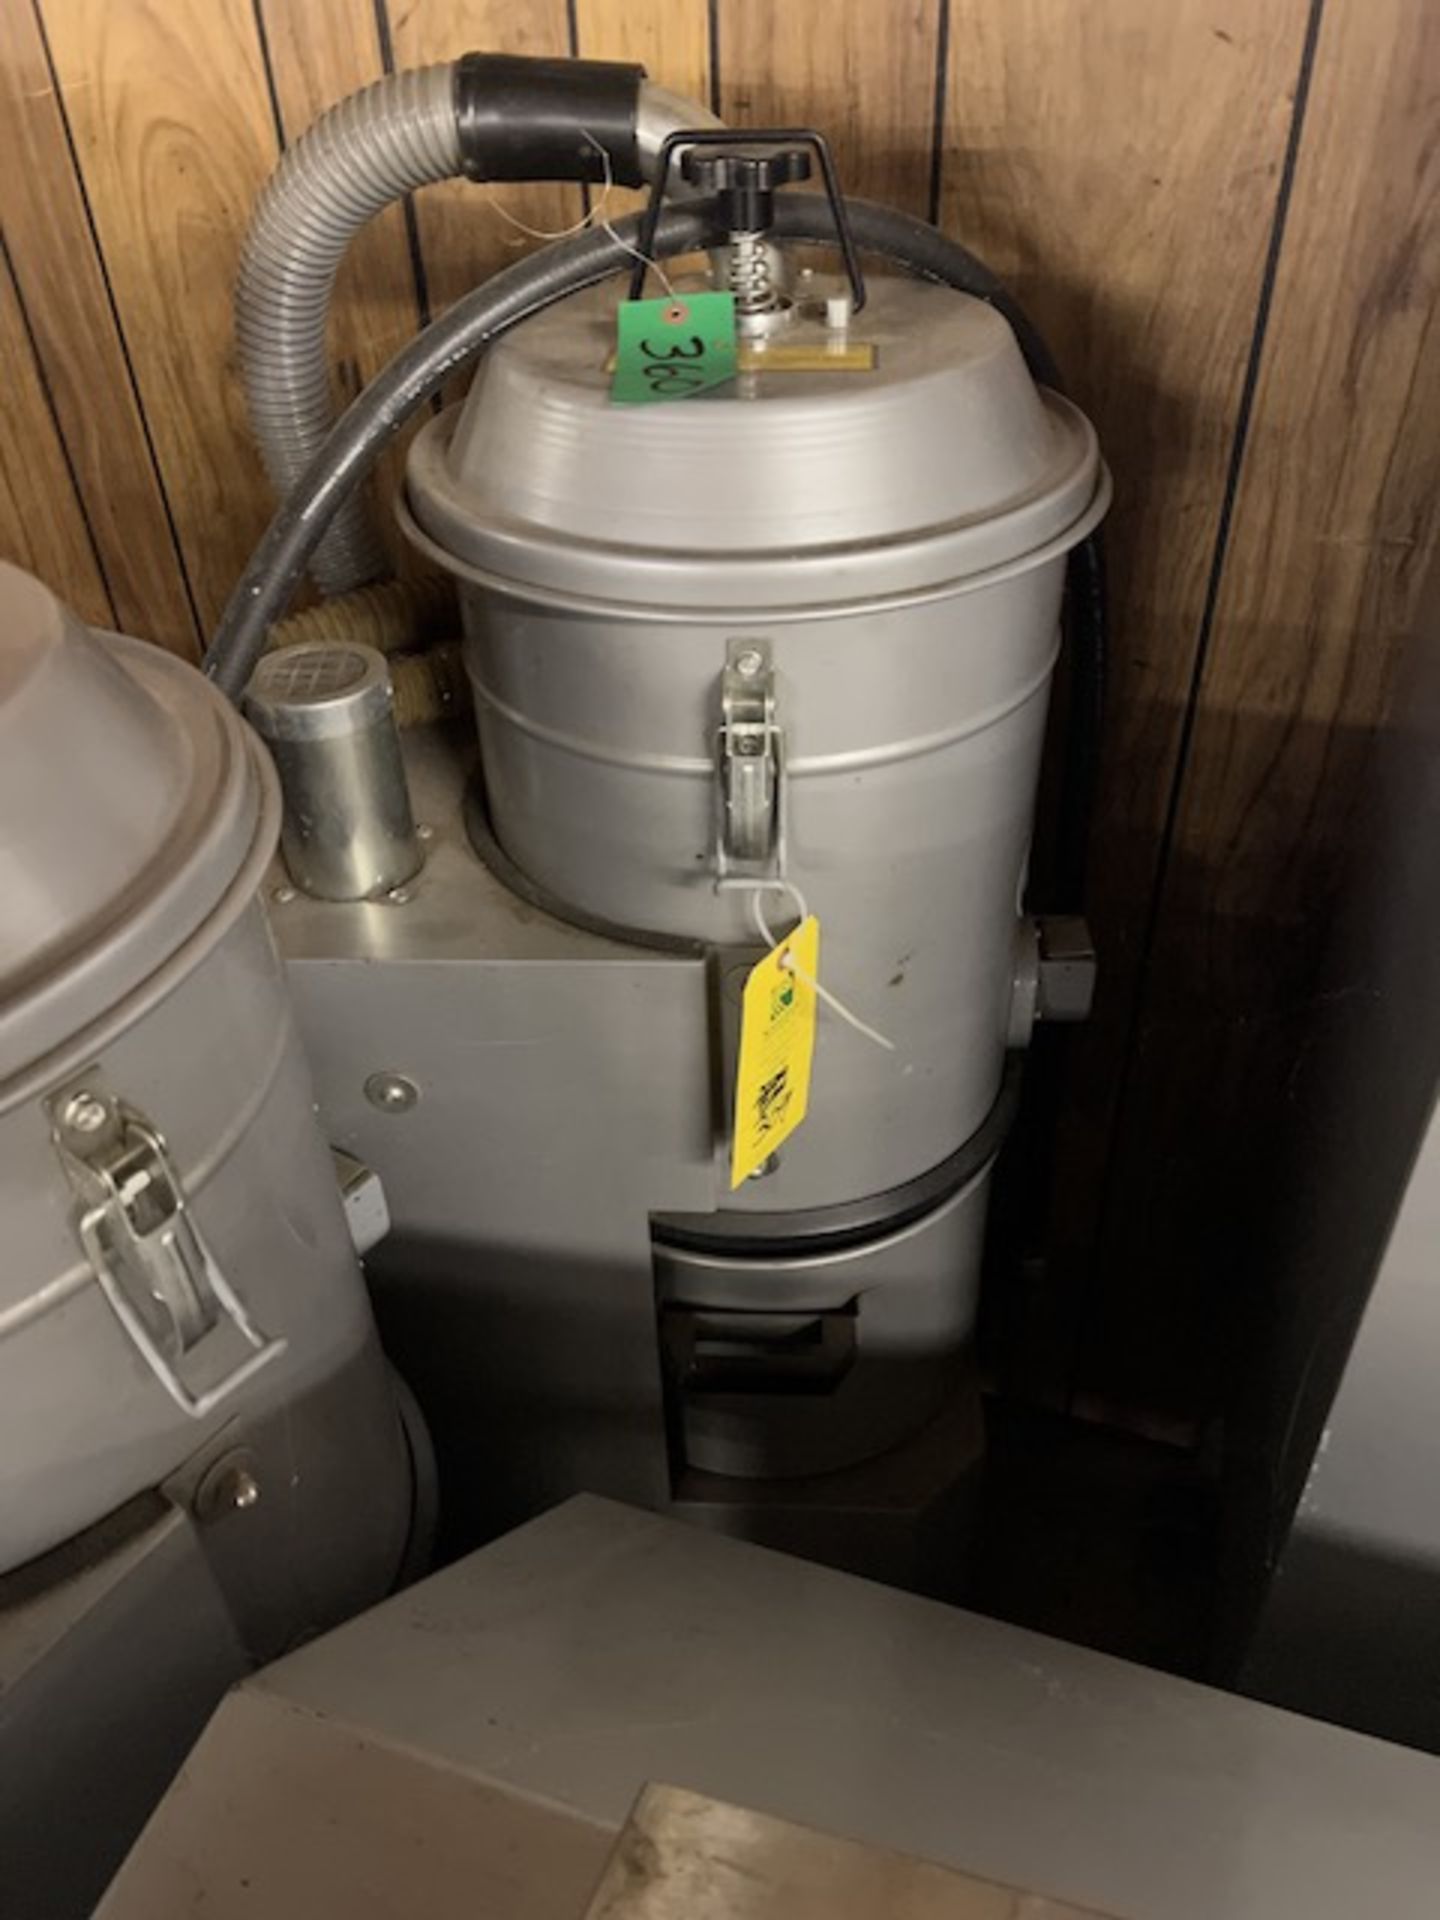 CFM Aspirator Industrial Vacuum, Located in Deshler, OH - Image 4 of 6